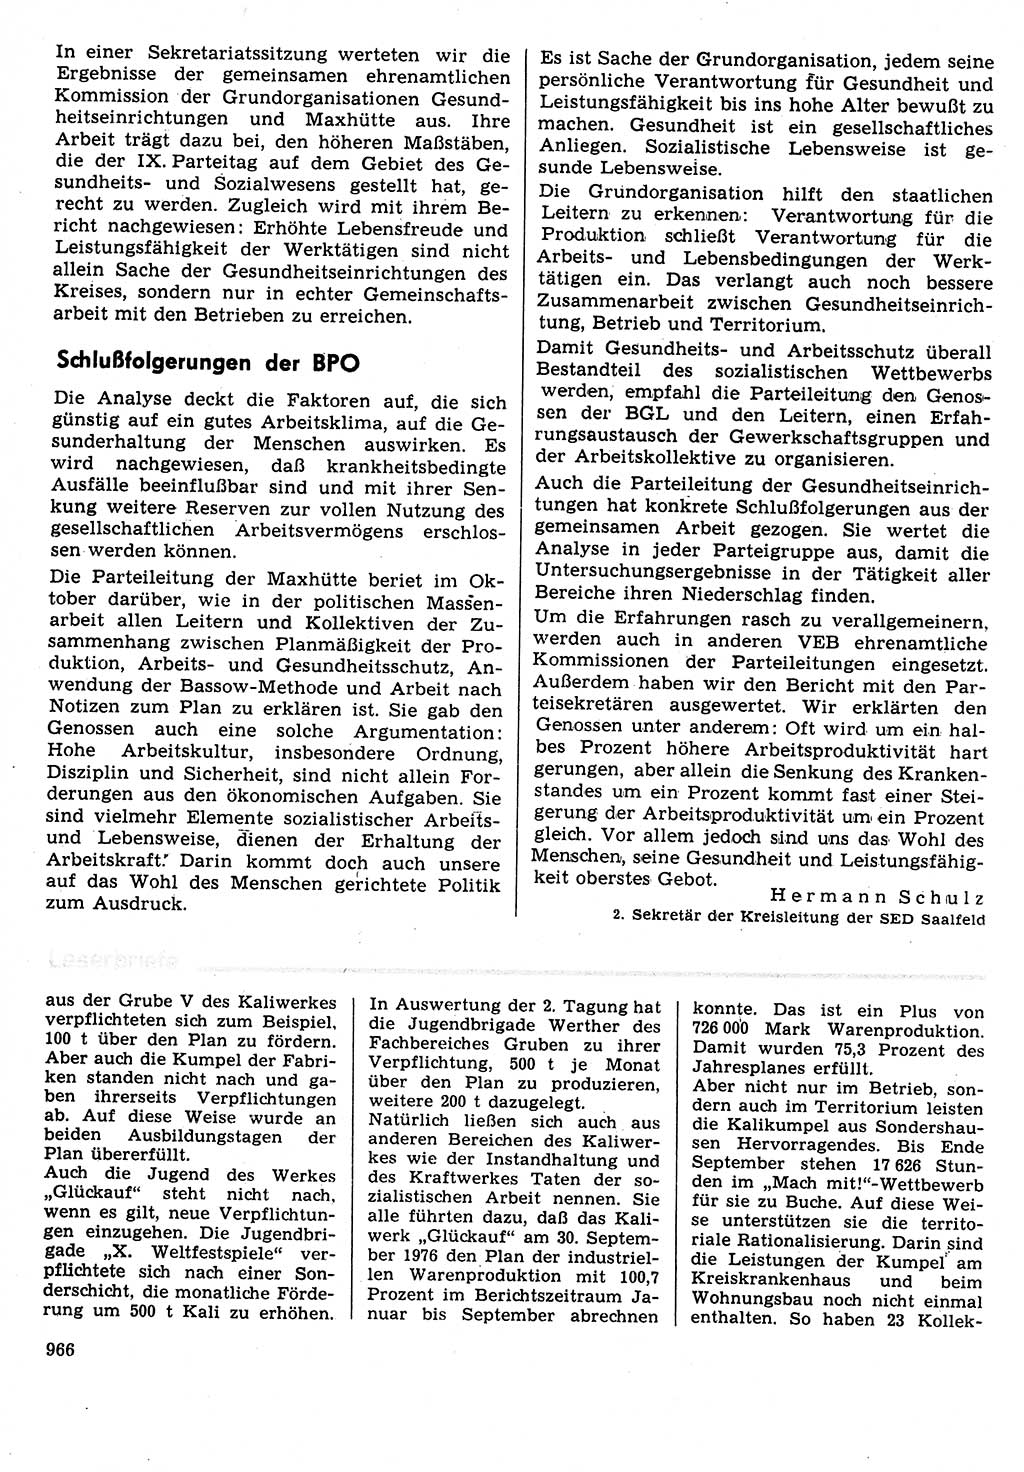 Neuer Weg (NW), Organ des Zentralkomitees (ZK) der SED (Sozialistische Einheitspartei Deutschlands) für Fragen des Parteilebens, 31. Jahrgang [Deutsche Demokratische Republik (DDR)] 1976, Seite 966 (NW ZK SED DDR 1976, S. 966)